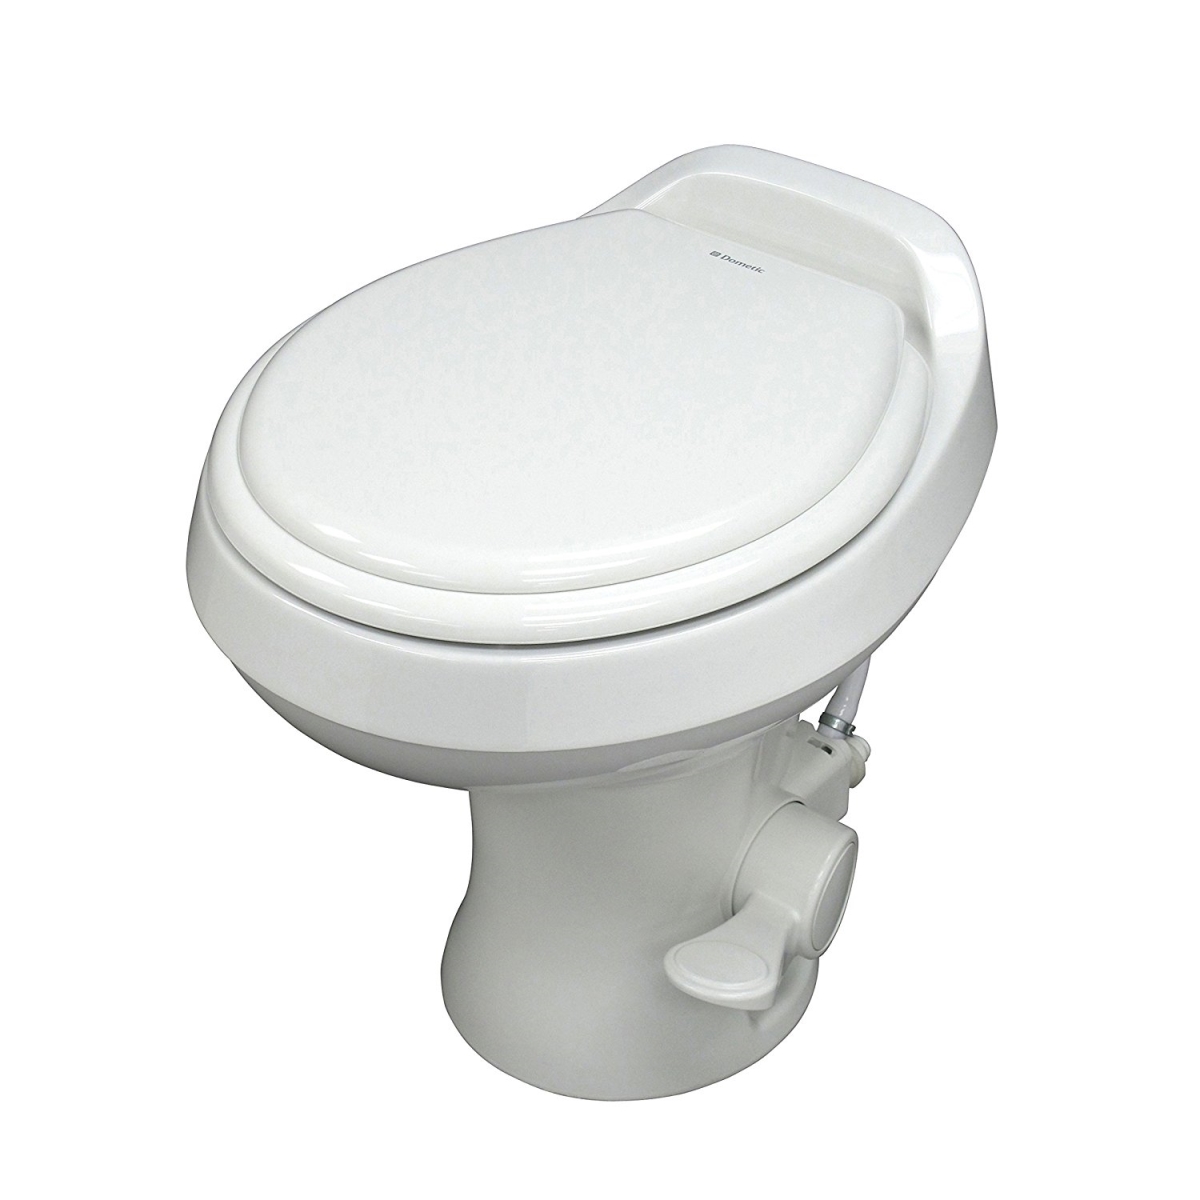 D7e-302300071 300 Series Sealand Toilet, White